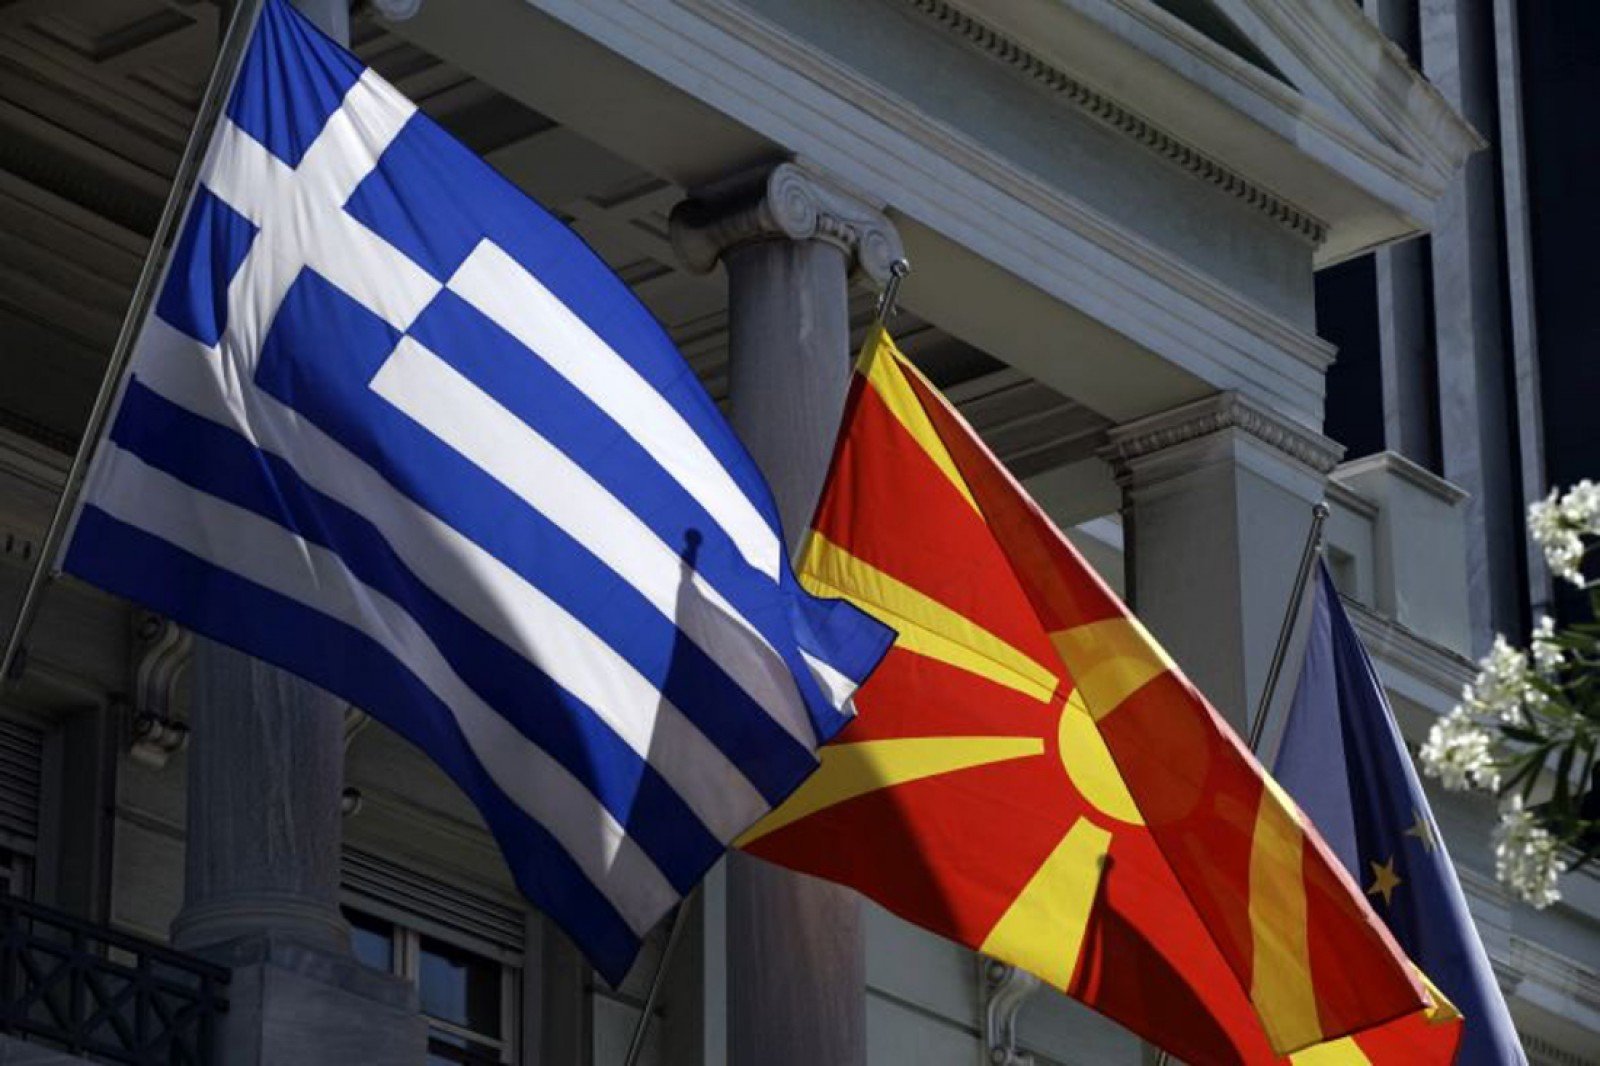 Μετράει δυνάμεις ο Τσίπρας με το "Βόρεια Μακεδονία". Τα στρατόπεδα "υπέρ και κατά" αλλά και οι αντιδράσεις